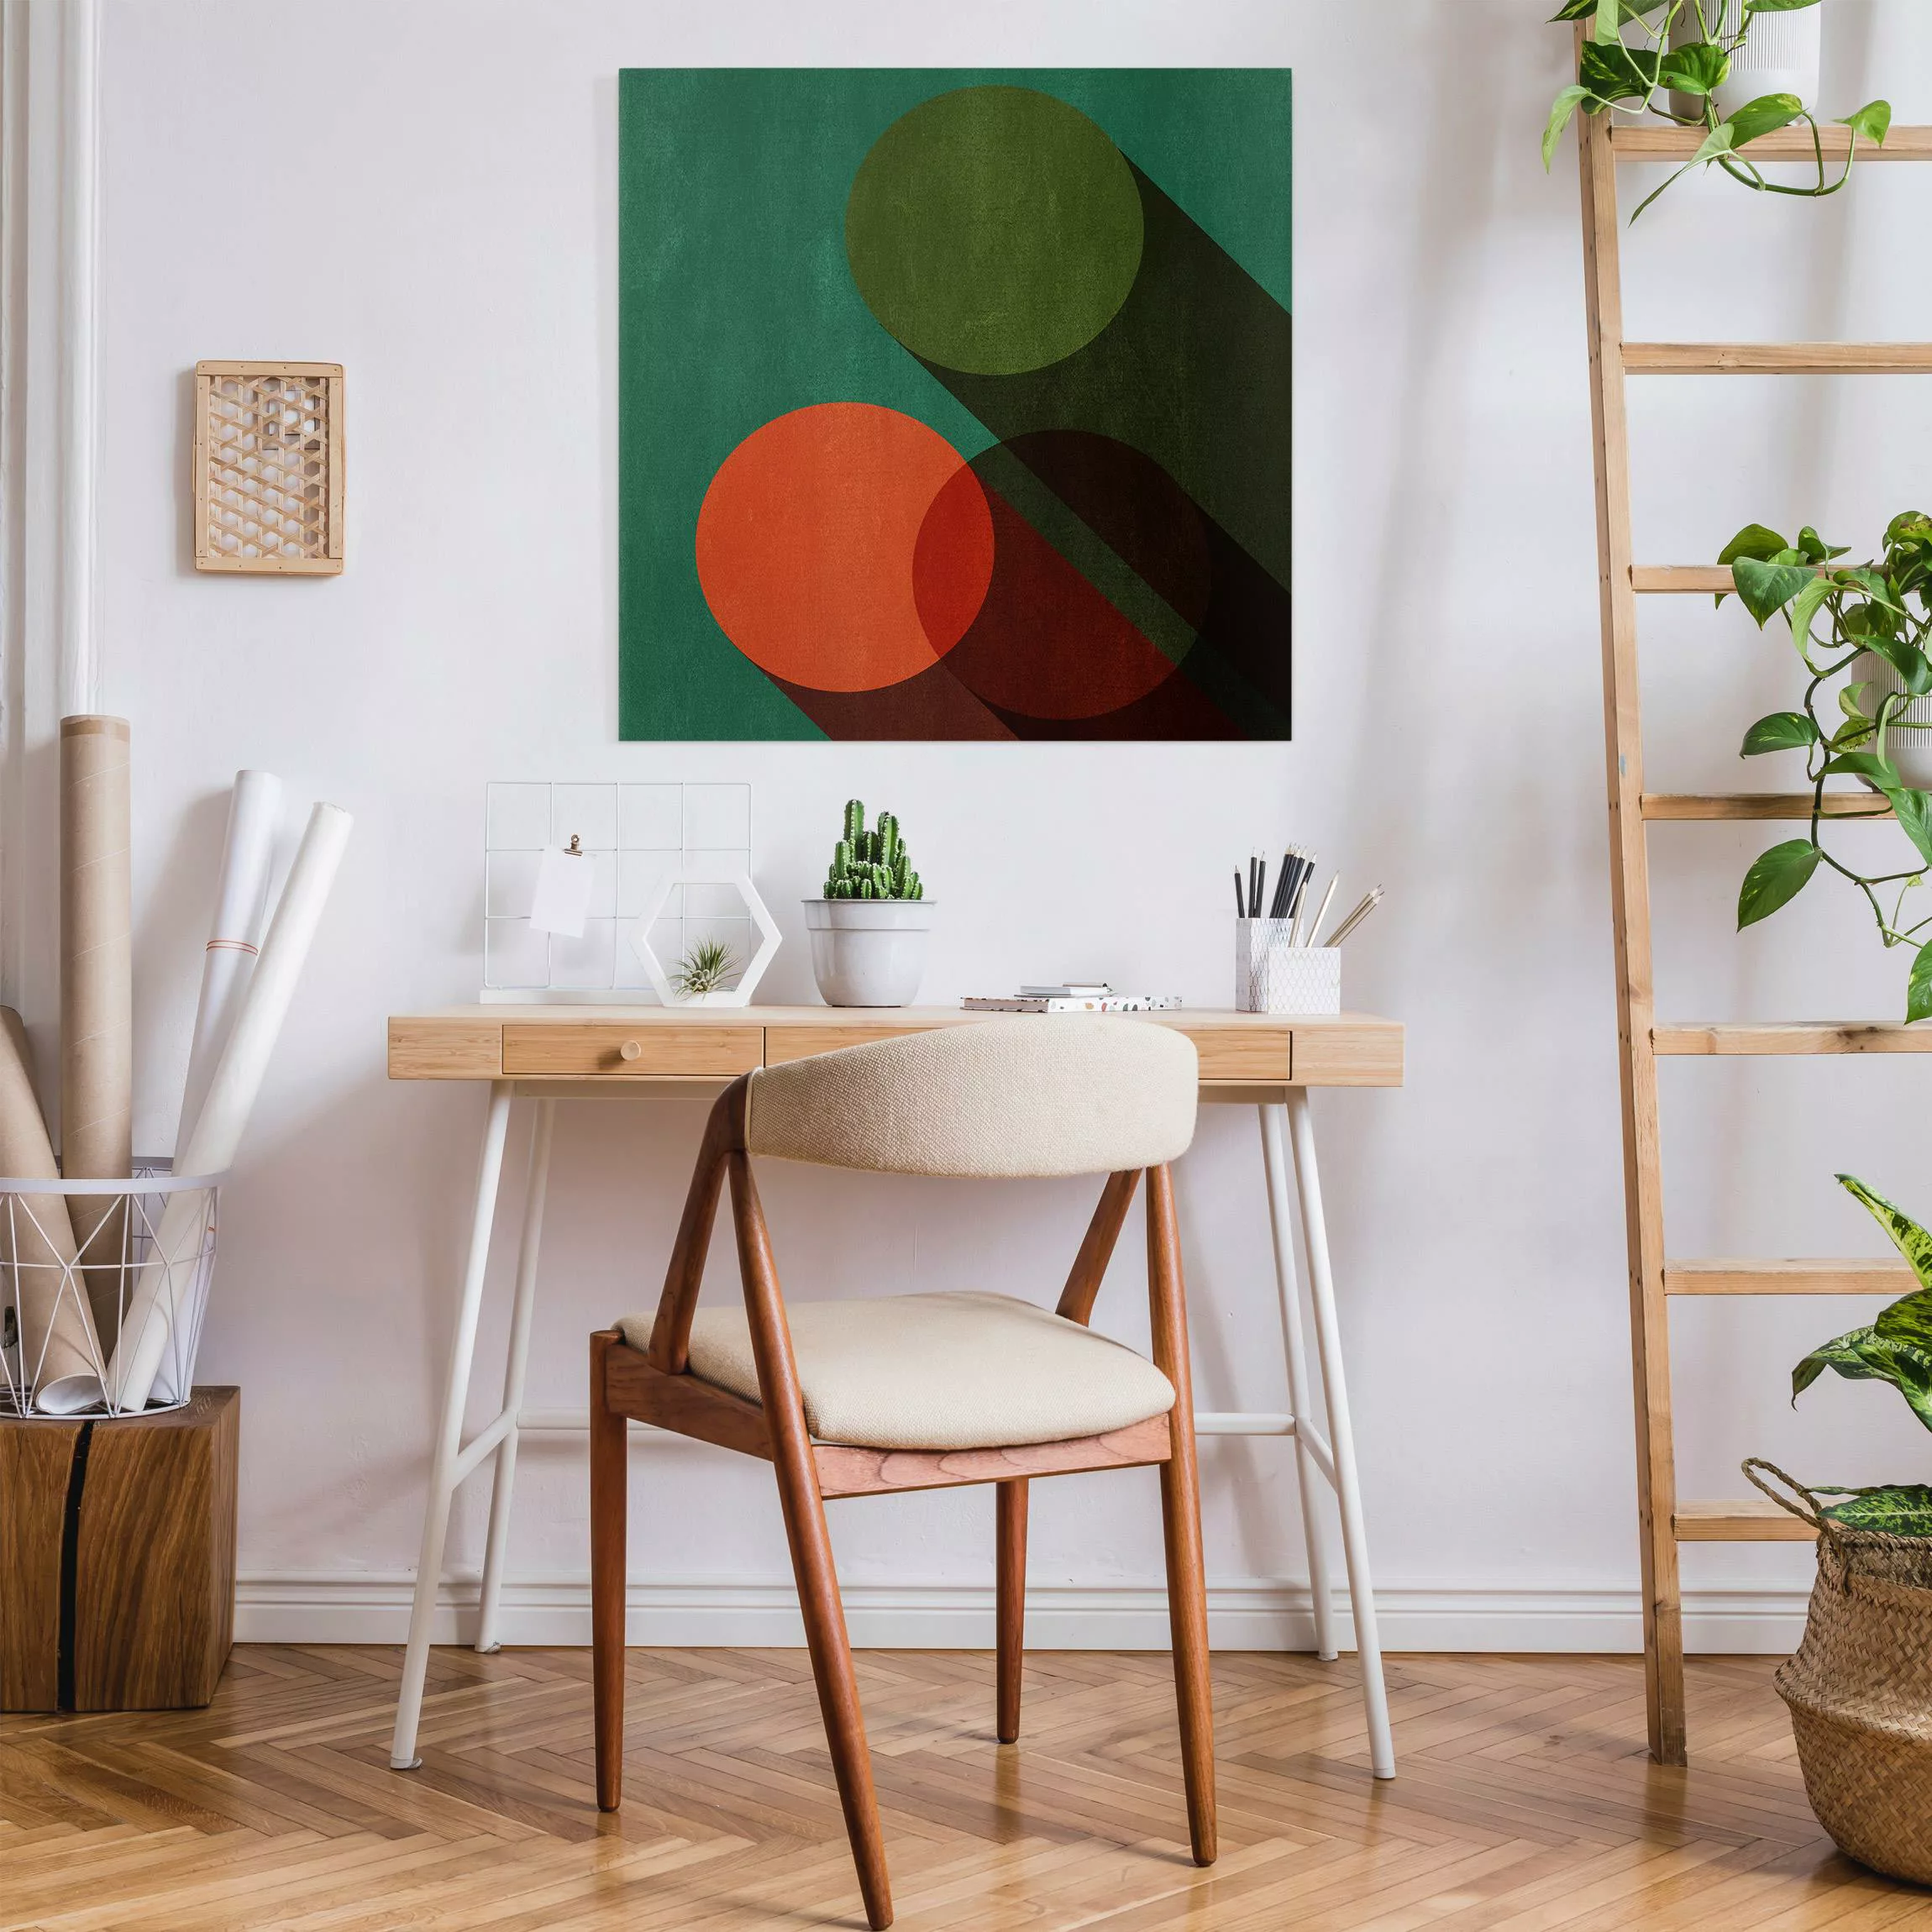 Leinwandbild Abstrakte Formen - Kreise in Grün und Rot günstig online kaufen